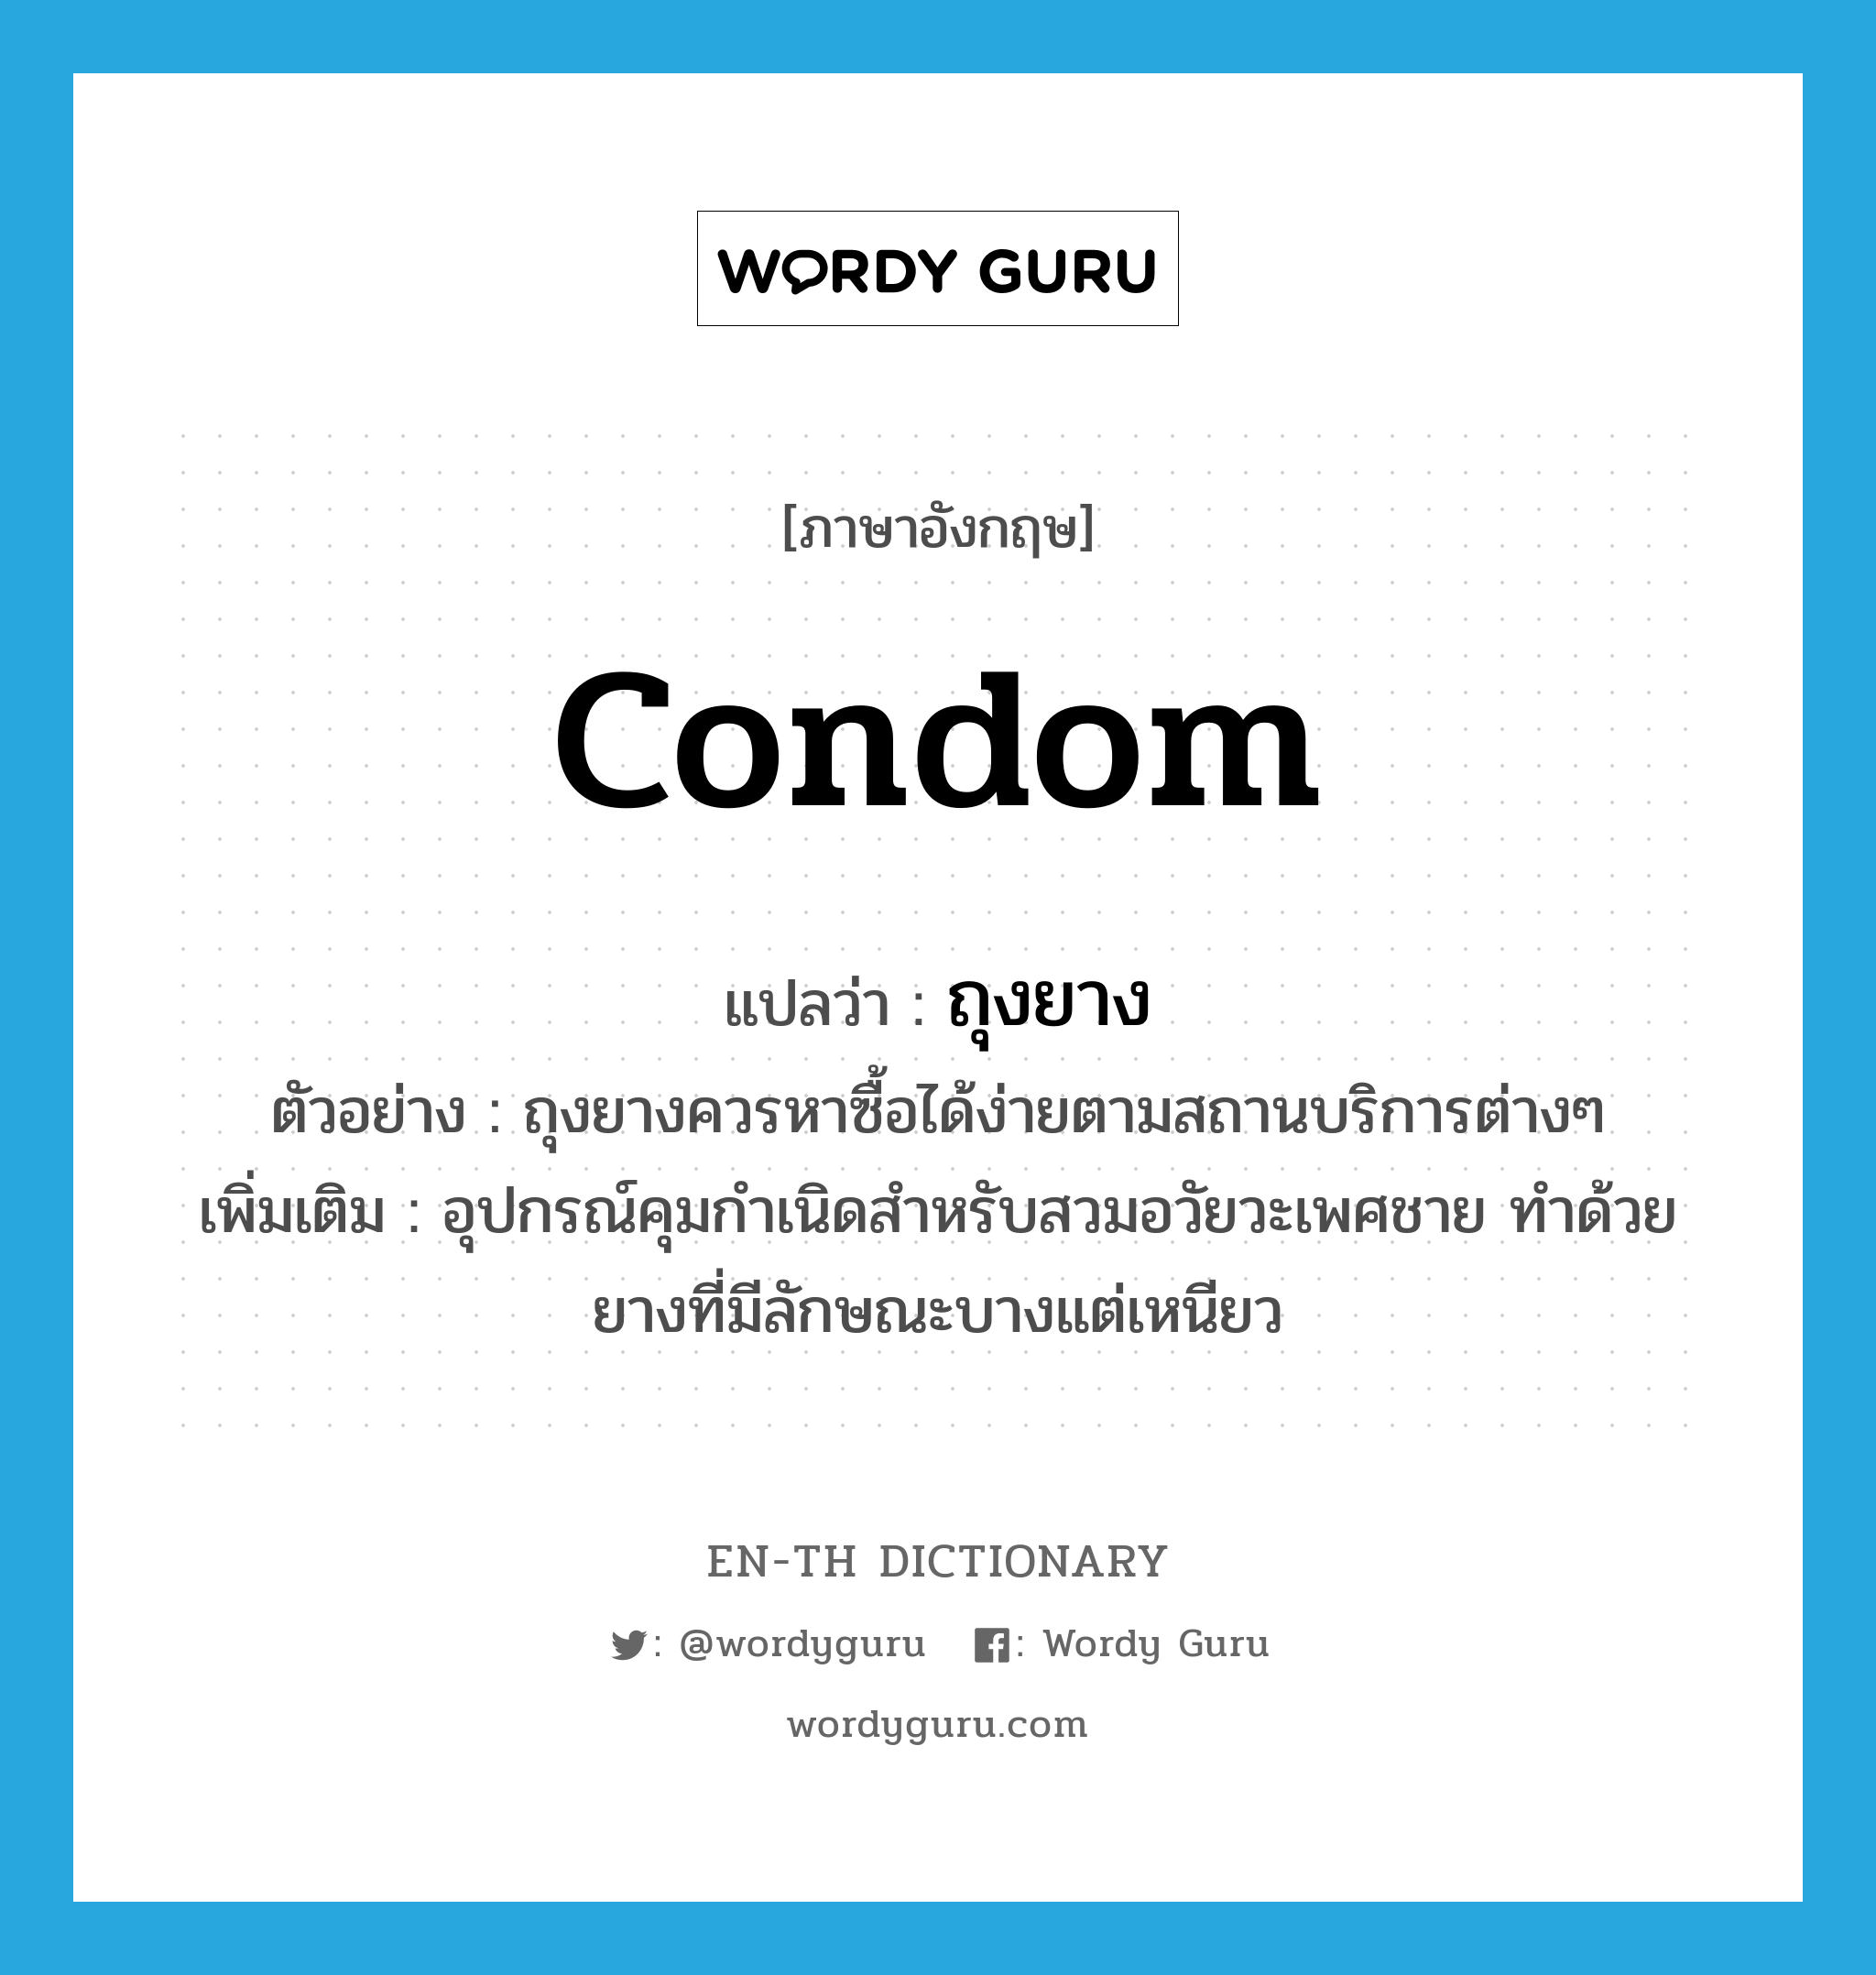 condom แปลว่า?, คำศัพท์ภาษาอังกฤษ condom แปลว่า ถุงยาง ประเภท N ตัวอย่าง ถุงยางควรหาซื้อได้ง่ายตามสถานบริการต่างๆ เพิ่มเติม อุปกรณ์คุมกำเนิดสำหรับสวมอวัยวะเพศชาย ทำด้วยยางที่มีลักษณะบางแต่เหนียว หมวด N